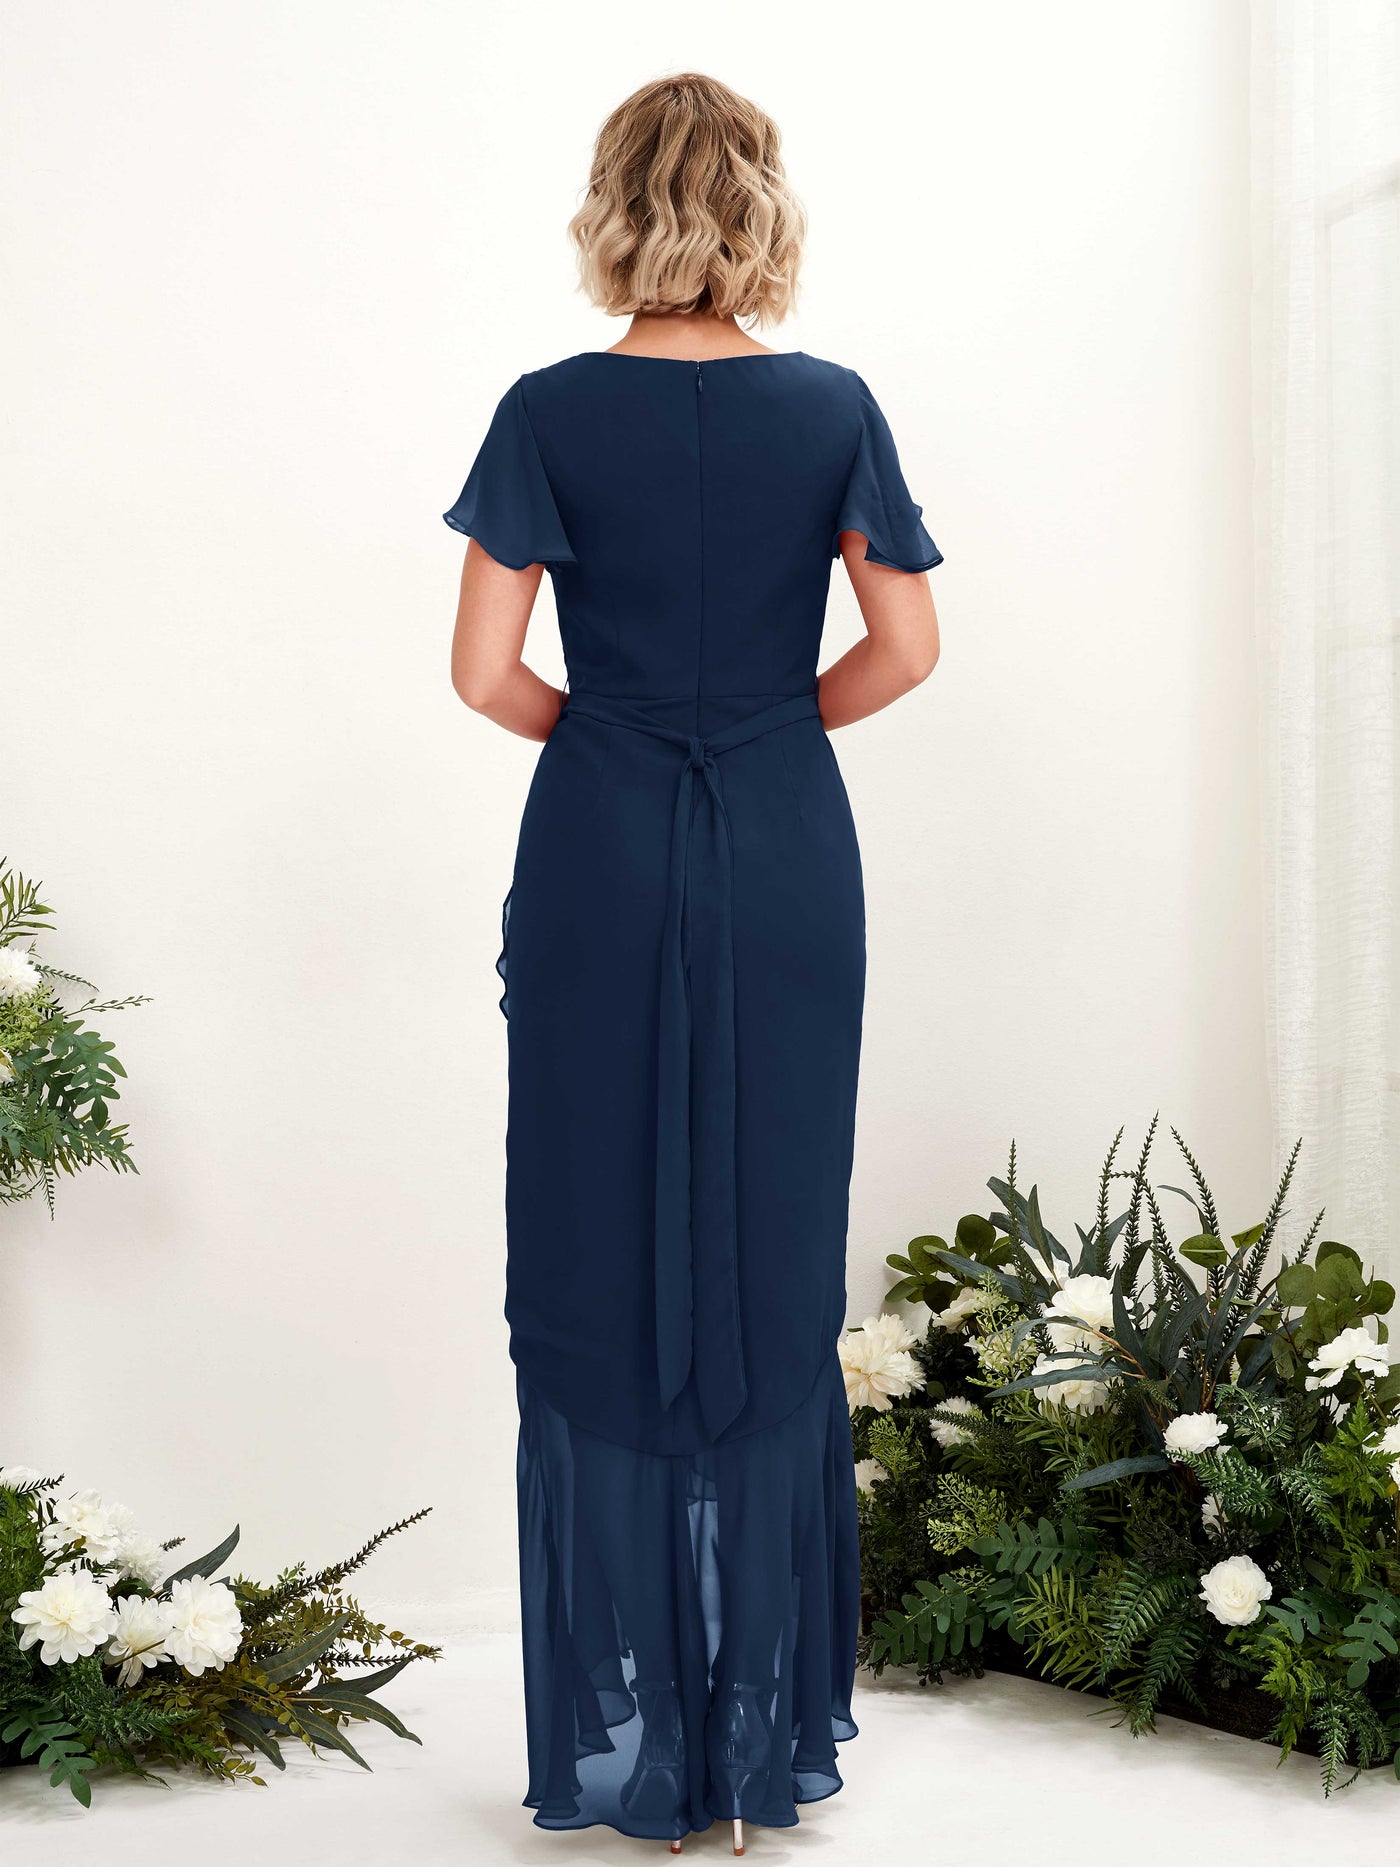 V-neck Short Sleeves Chiffon Bridesmaid Dress (81226213)#color_navy